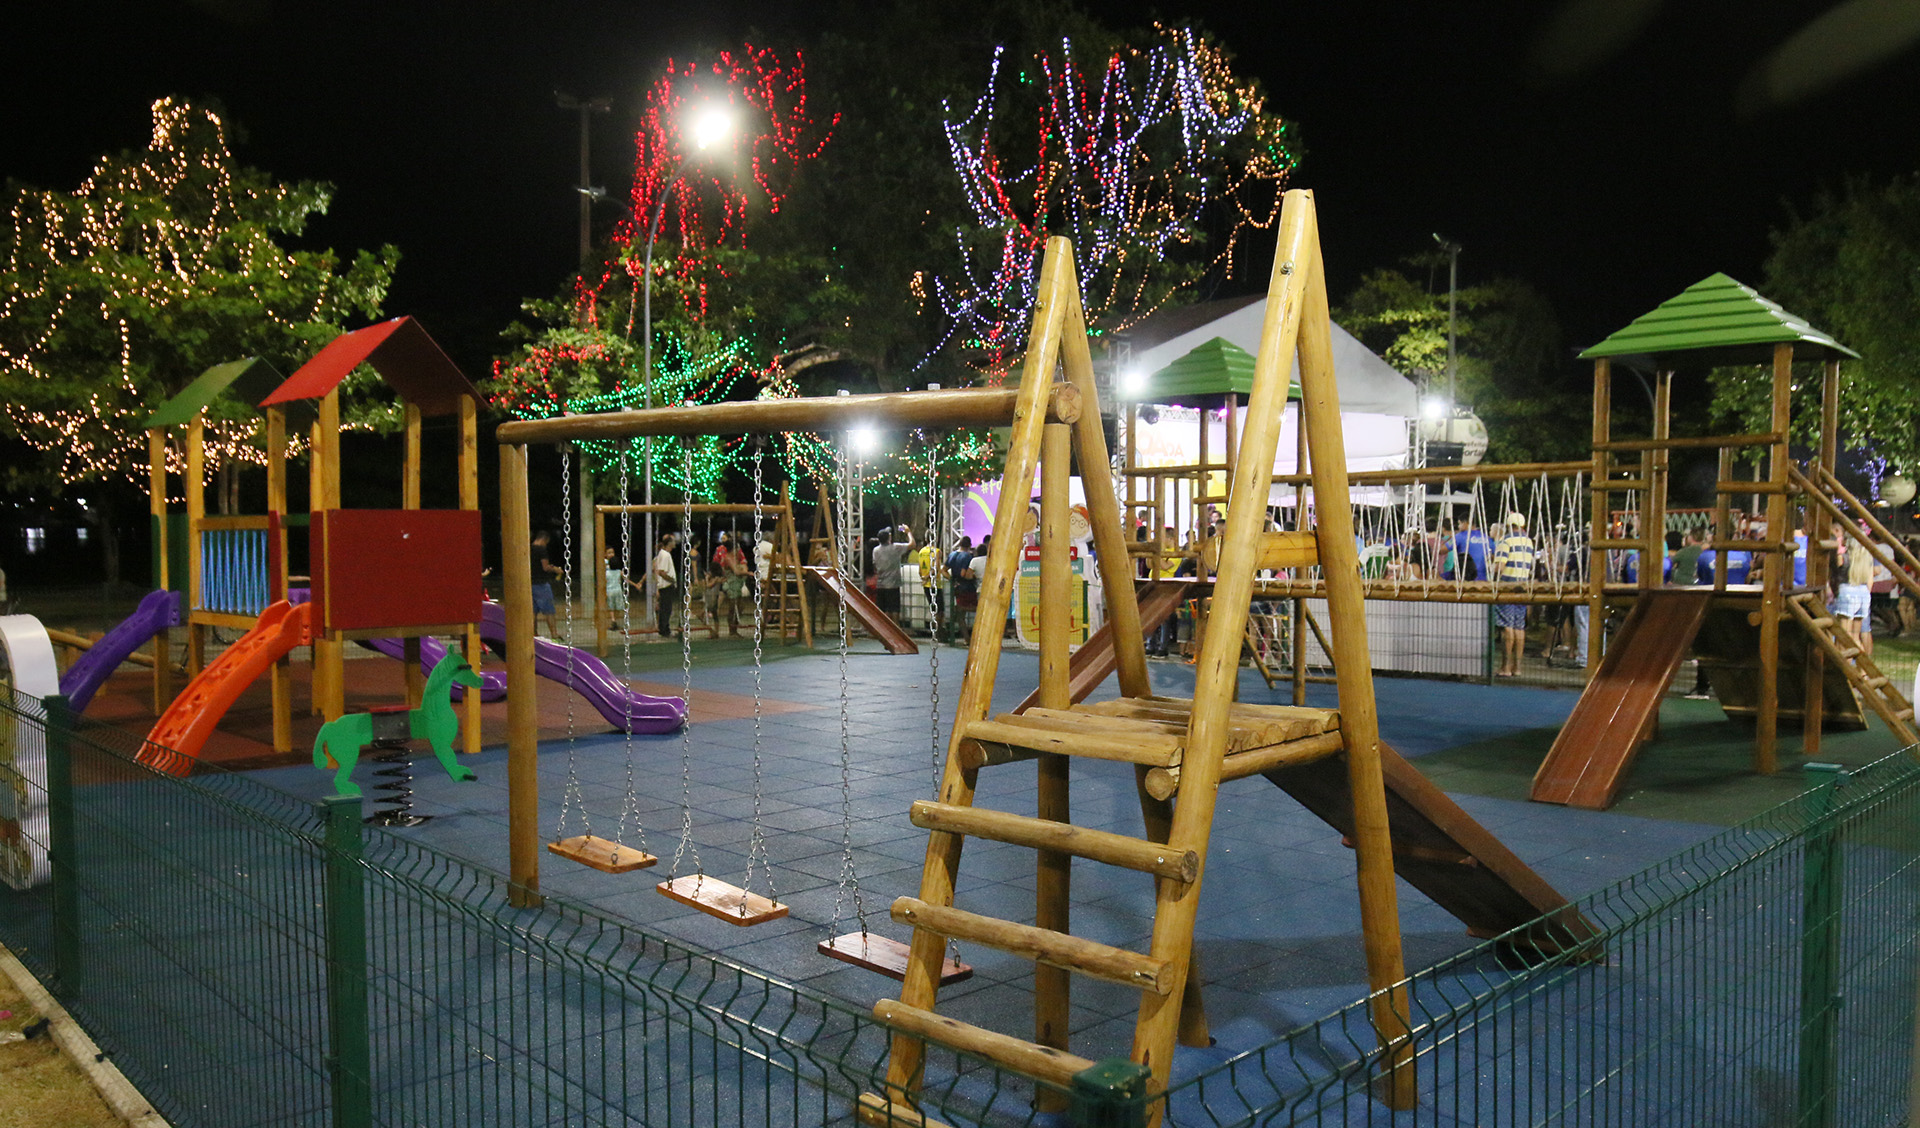 parque infantil a noite com árvores iluminadas ao redor